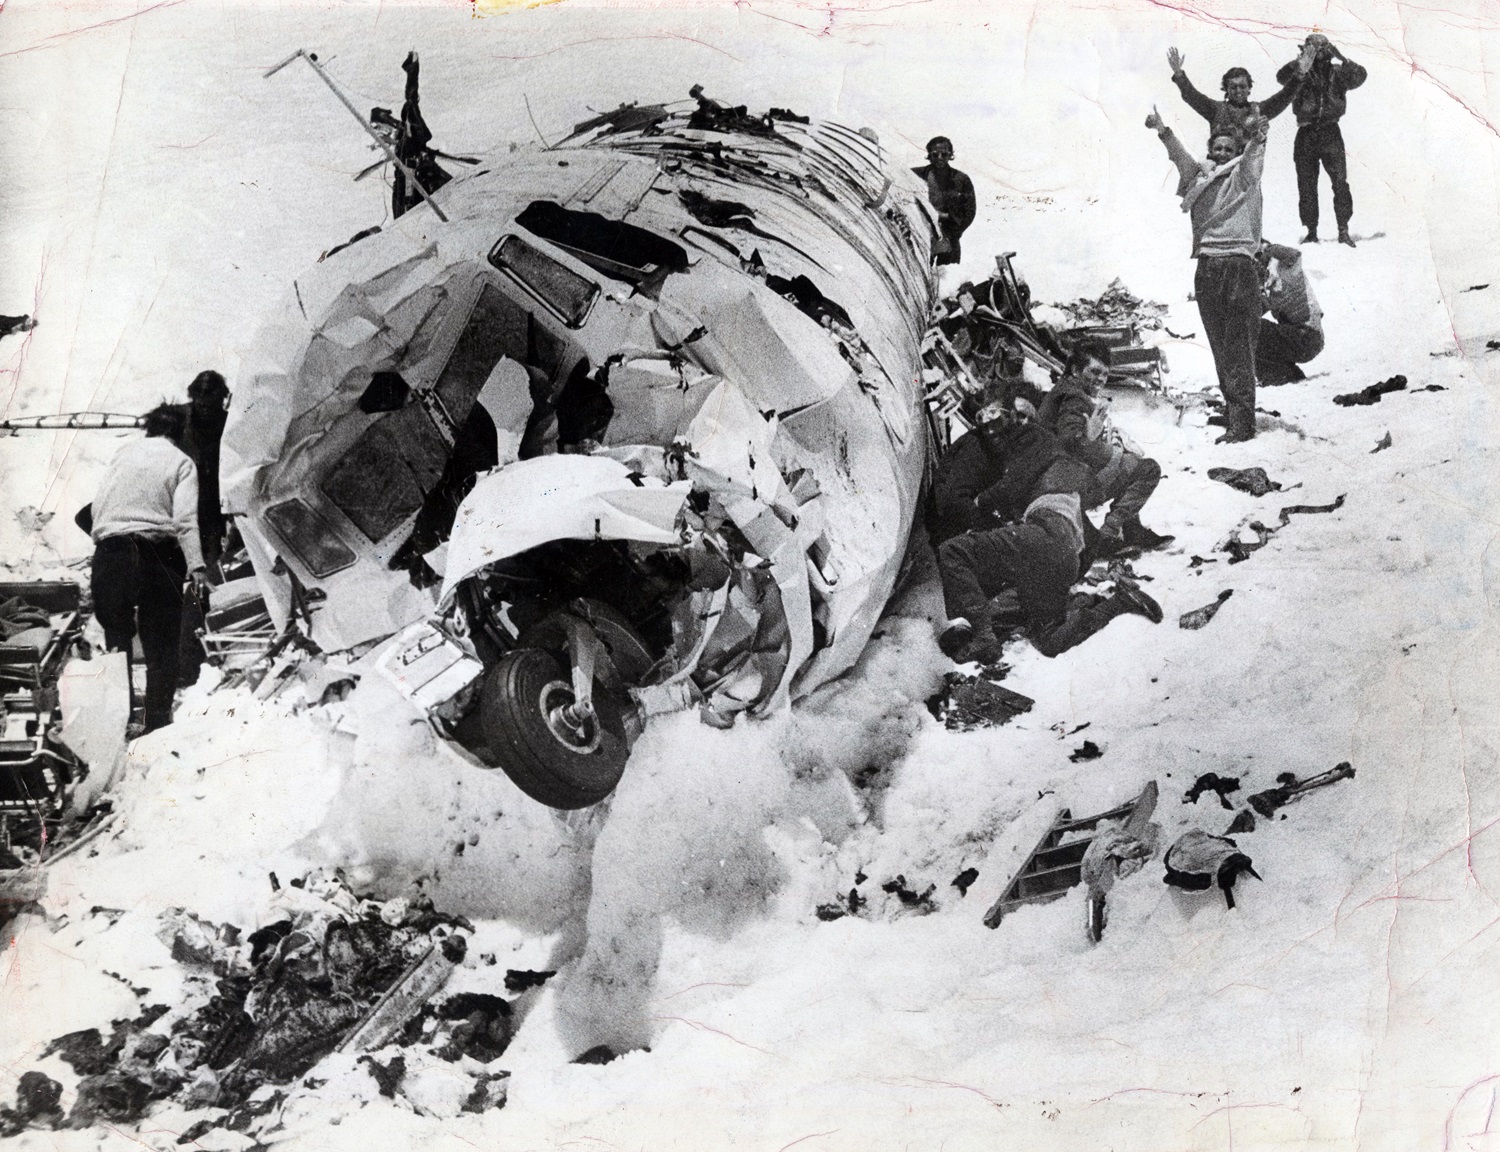 La comparación entre 'La sociedad de la nieve' y las imágenes reales del  accidente de los Andes - Meristation